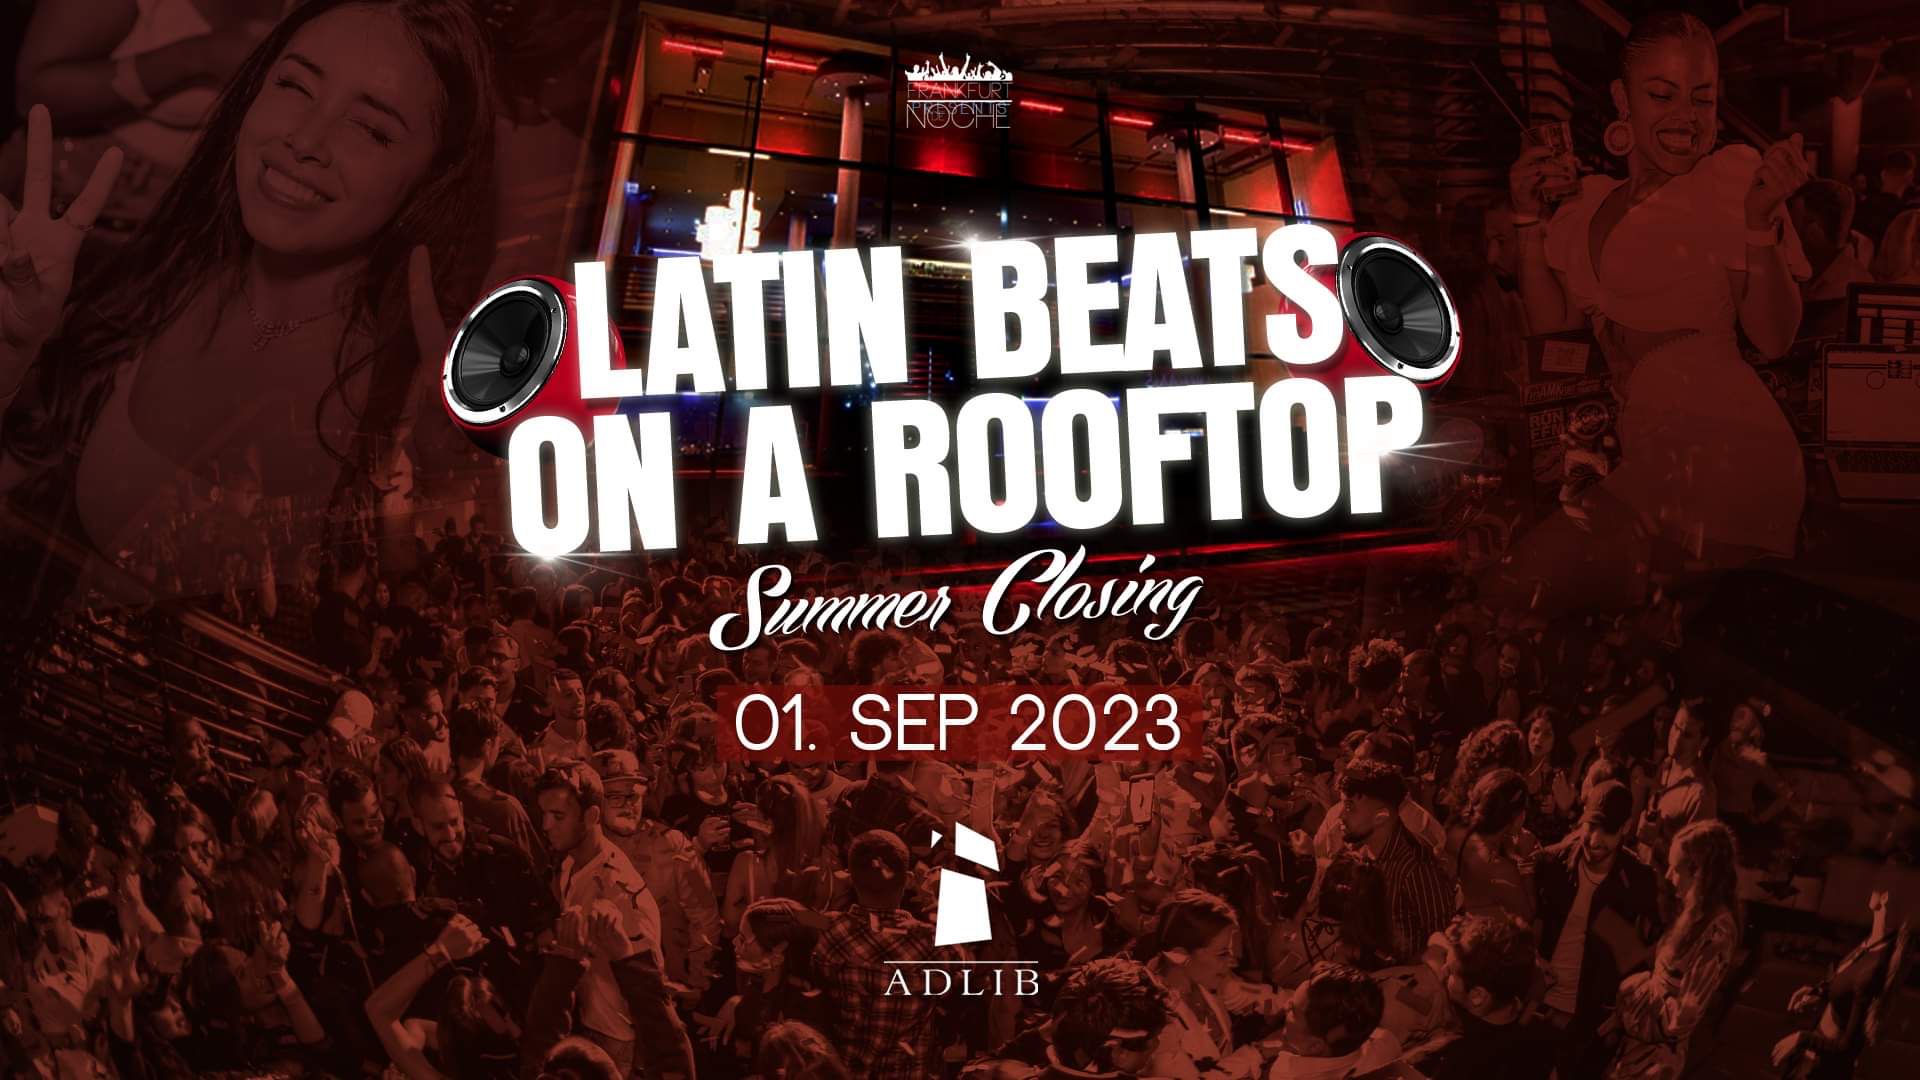 Latinbeats on a Rooftop 01.09.2023 Adlib, Frankfurt